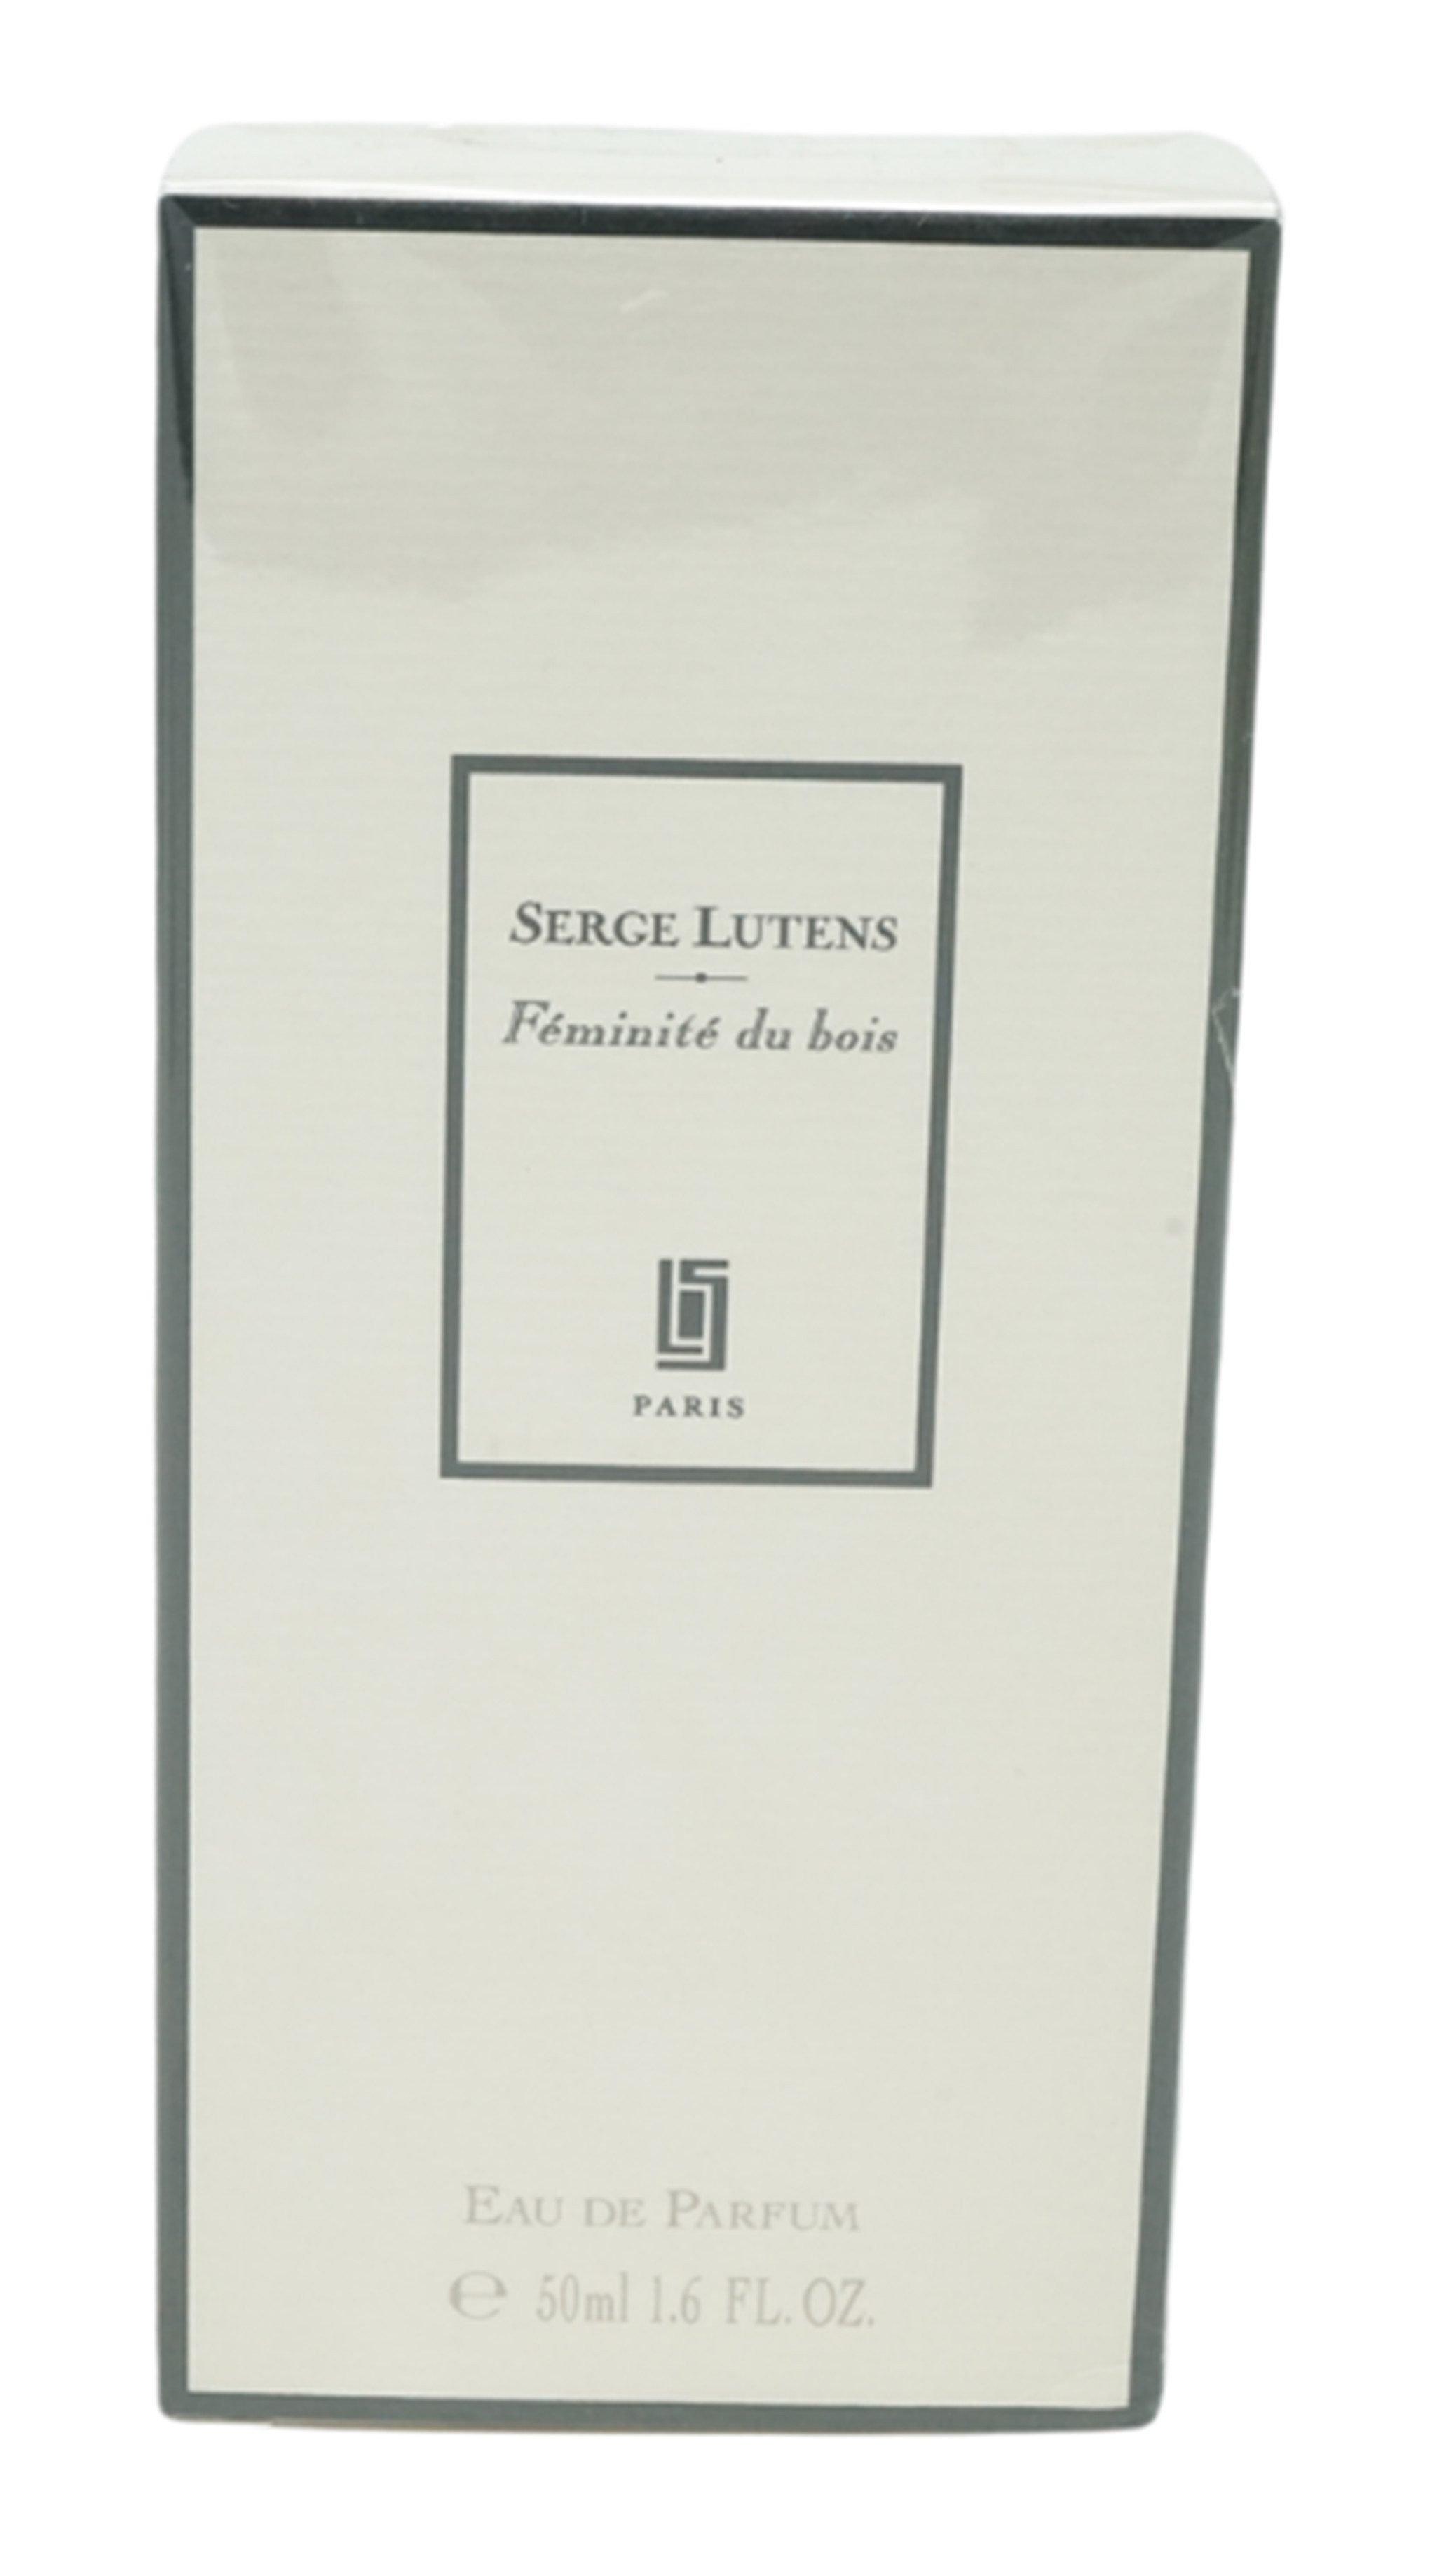 SERGE LUTENS Eau de Parfum Serge Lutens Feminité du bois Eau de Parfum 50 ml